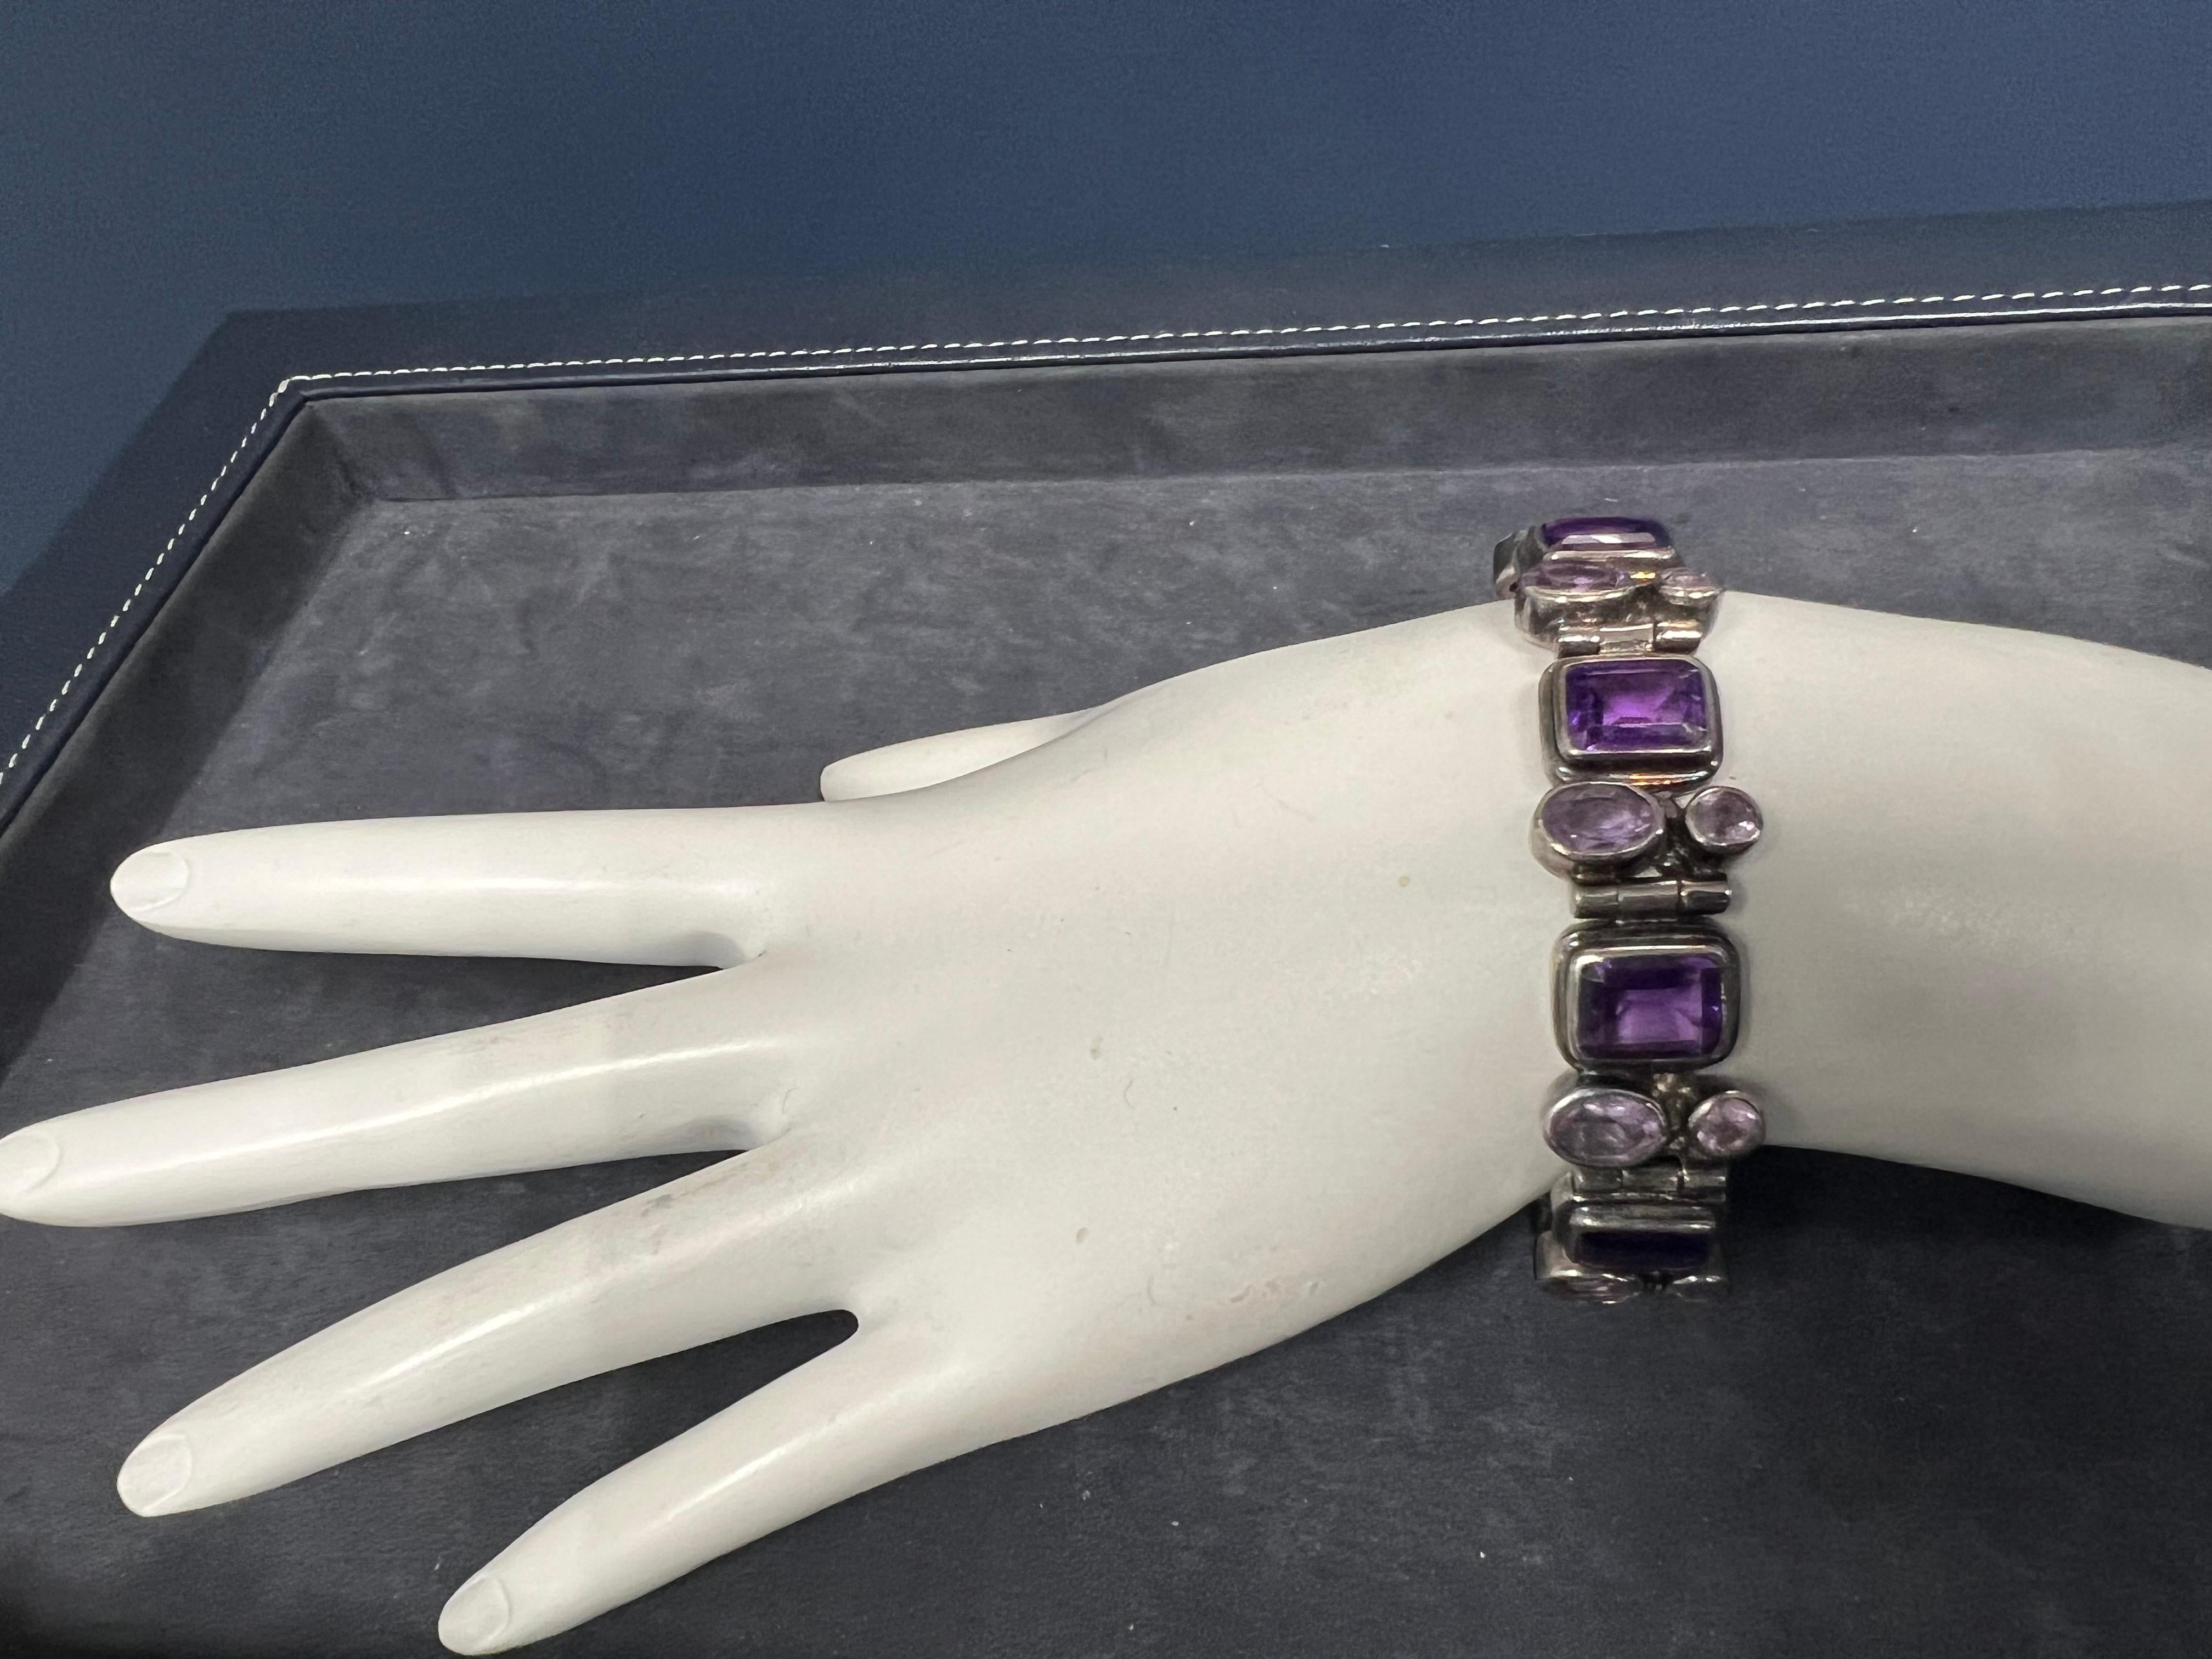 purple emerald bracelet